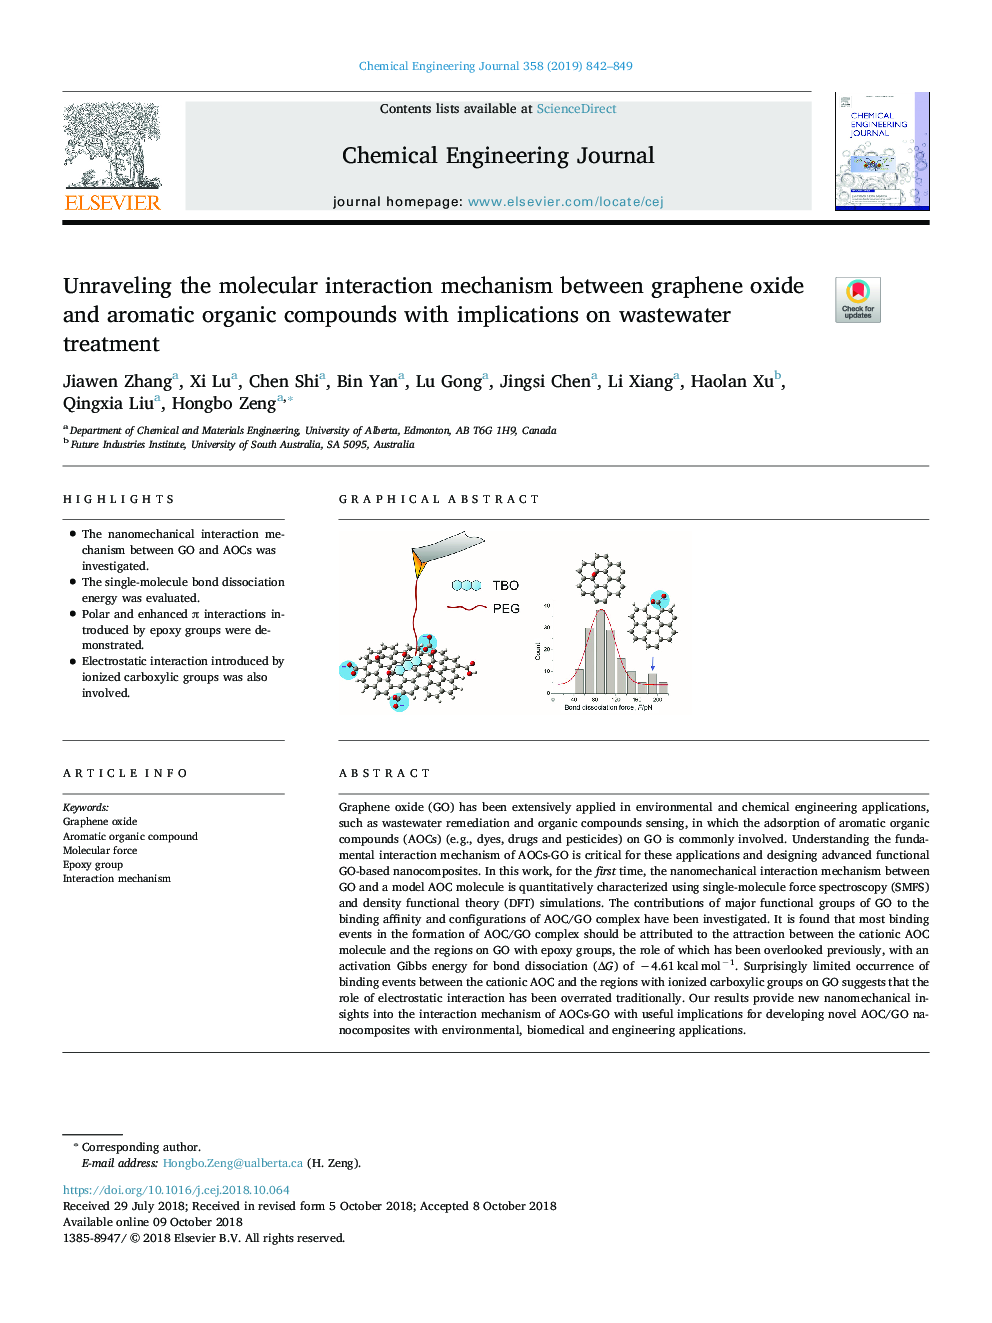 تجزیه و تحلیل مکانیزم تعامل مولکولی بین اکسید گرافین و ترکیبات آلی معطر با پیامدهای درمان تصفیه خانه